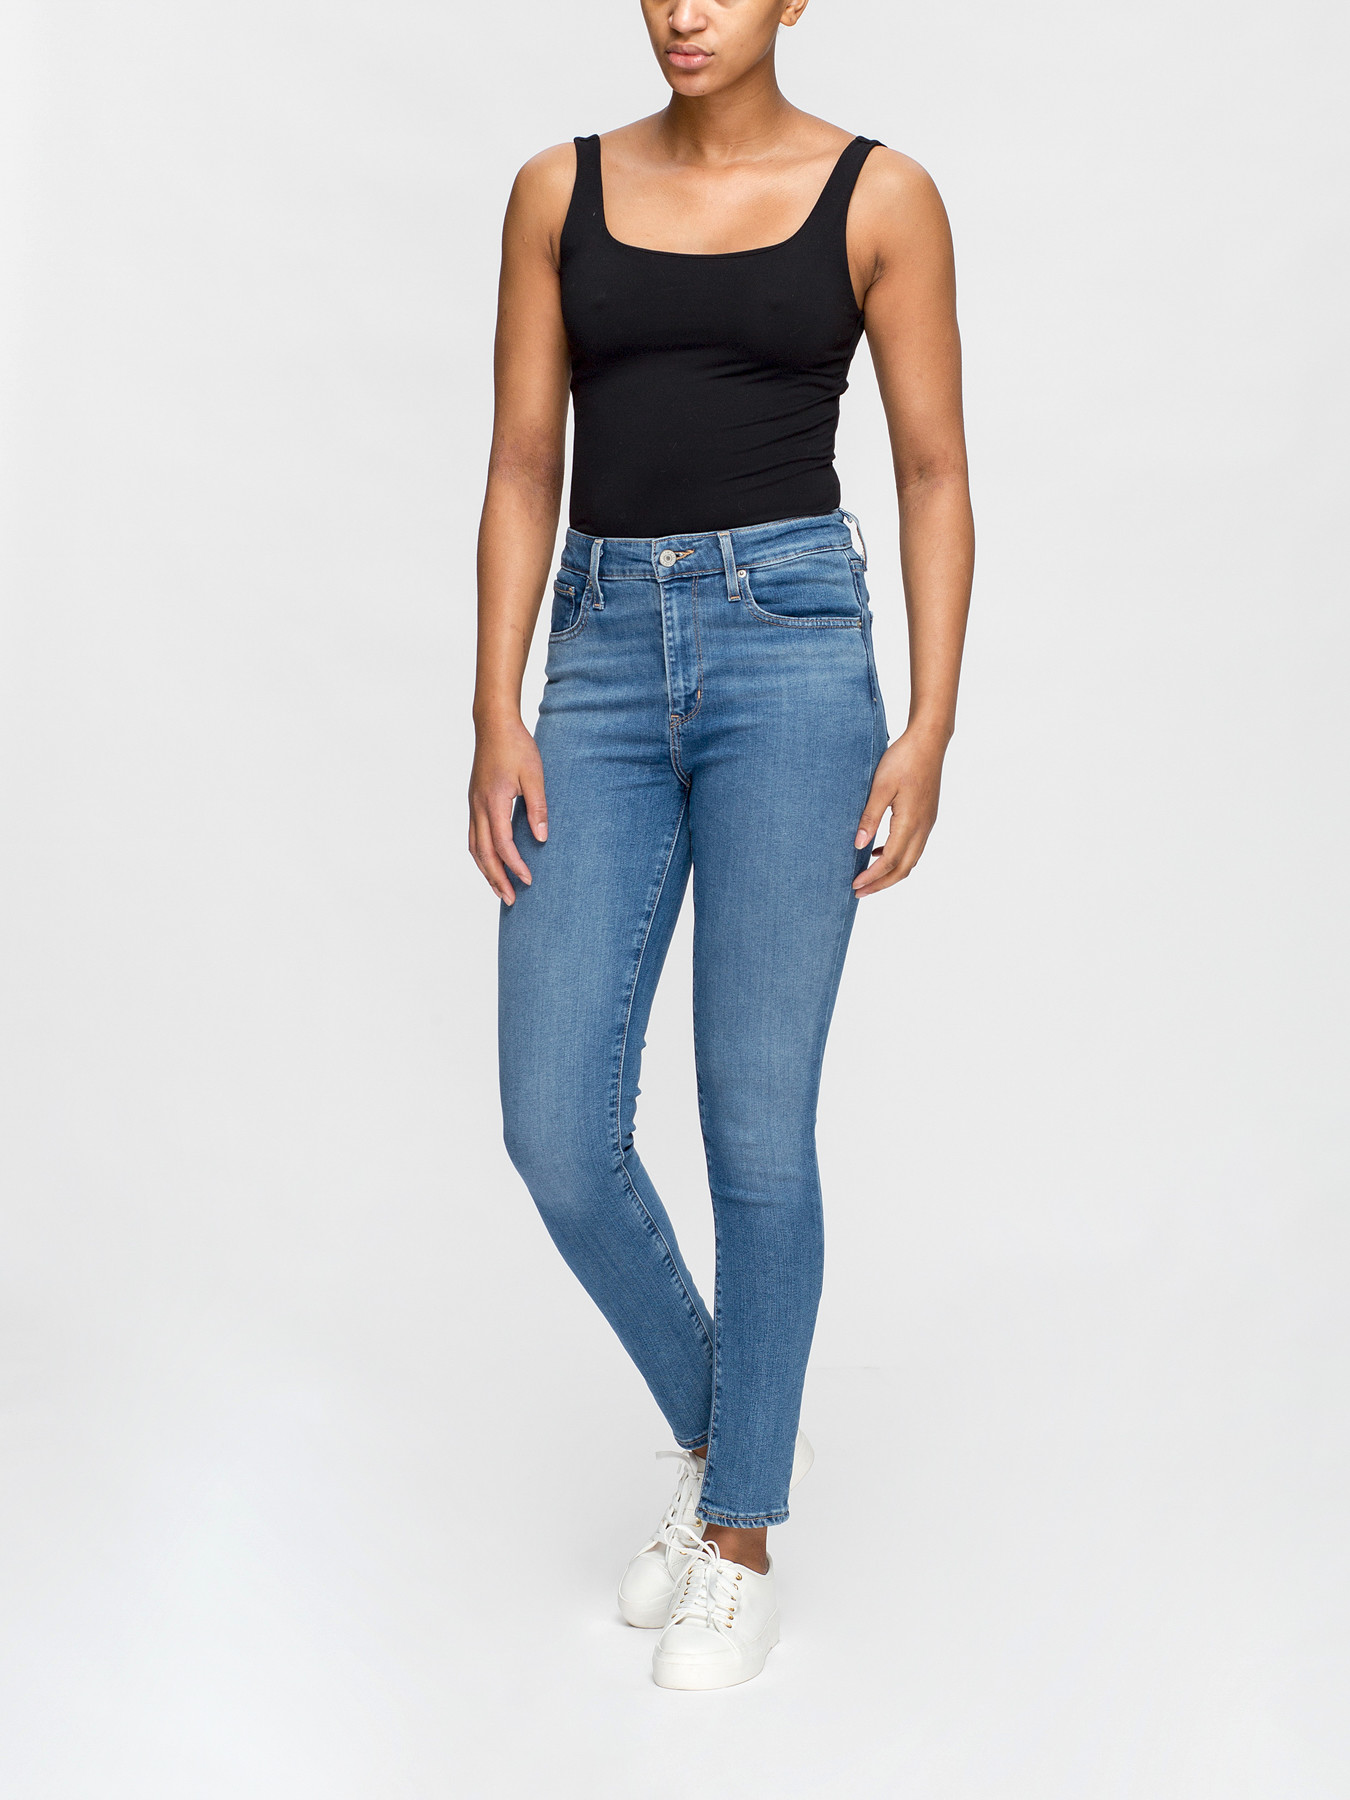 Women's Levi's 721 High Rise Skinny Jeans | Fenwick